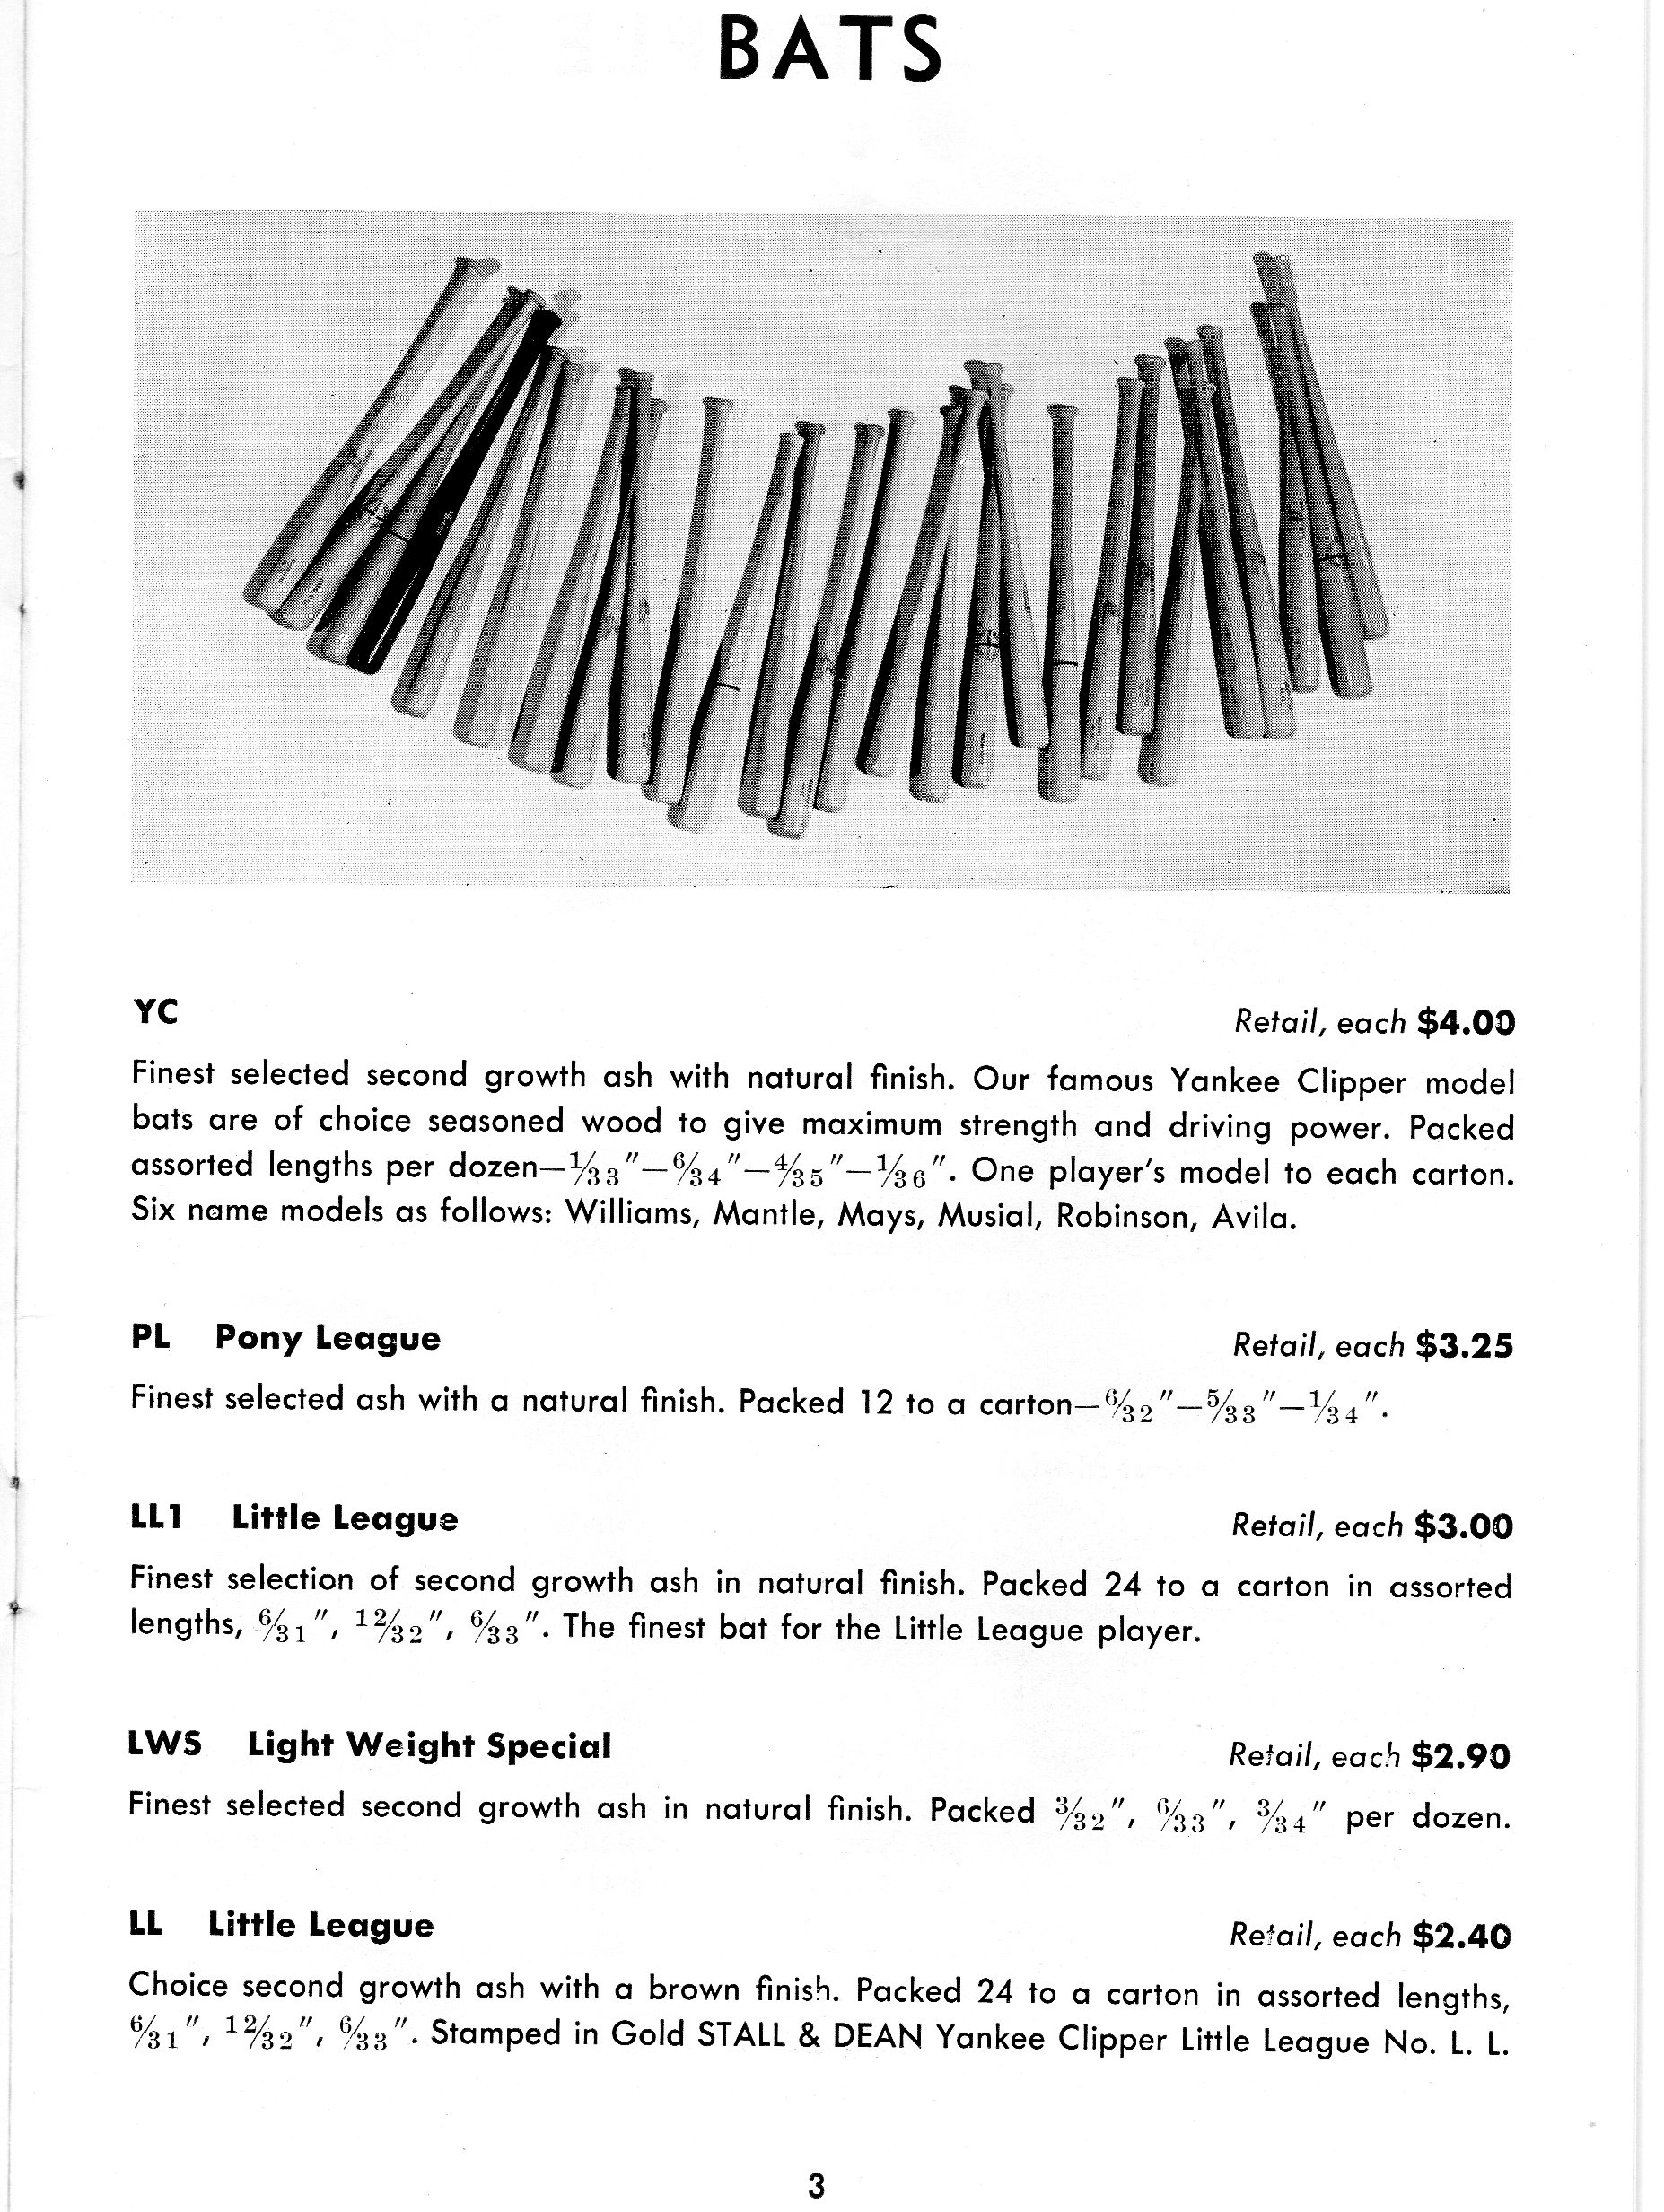 1957 stall@dean catalog